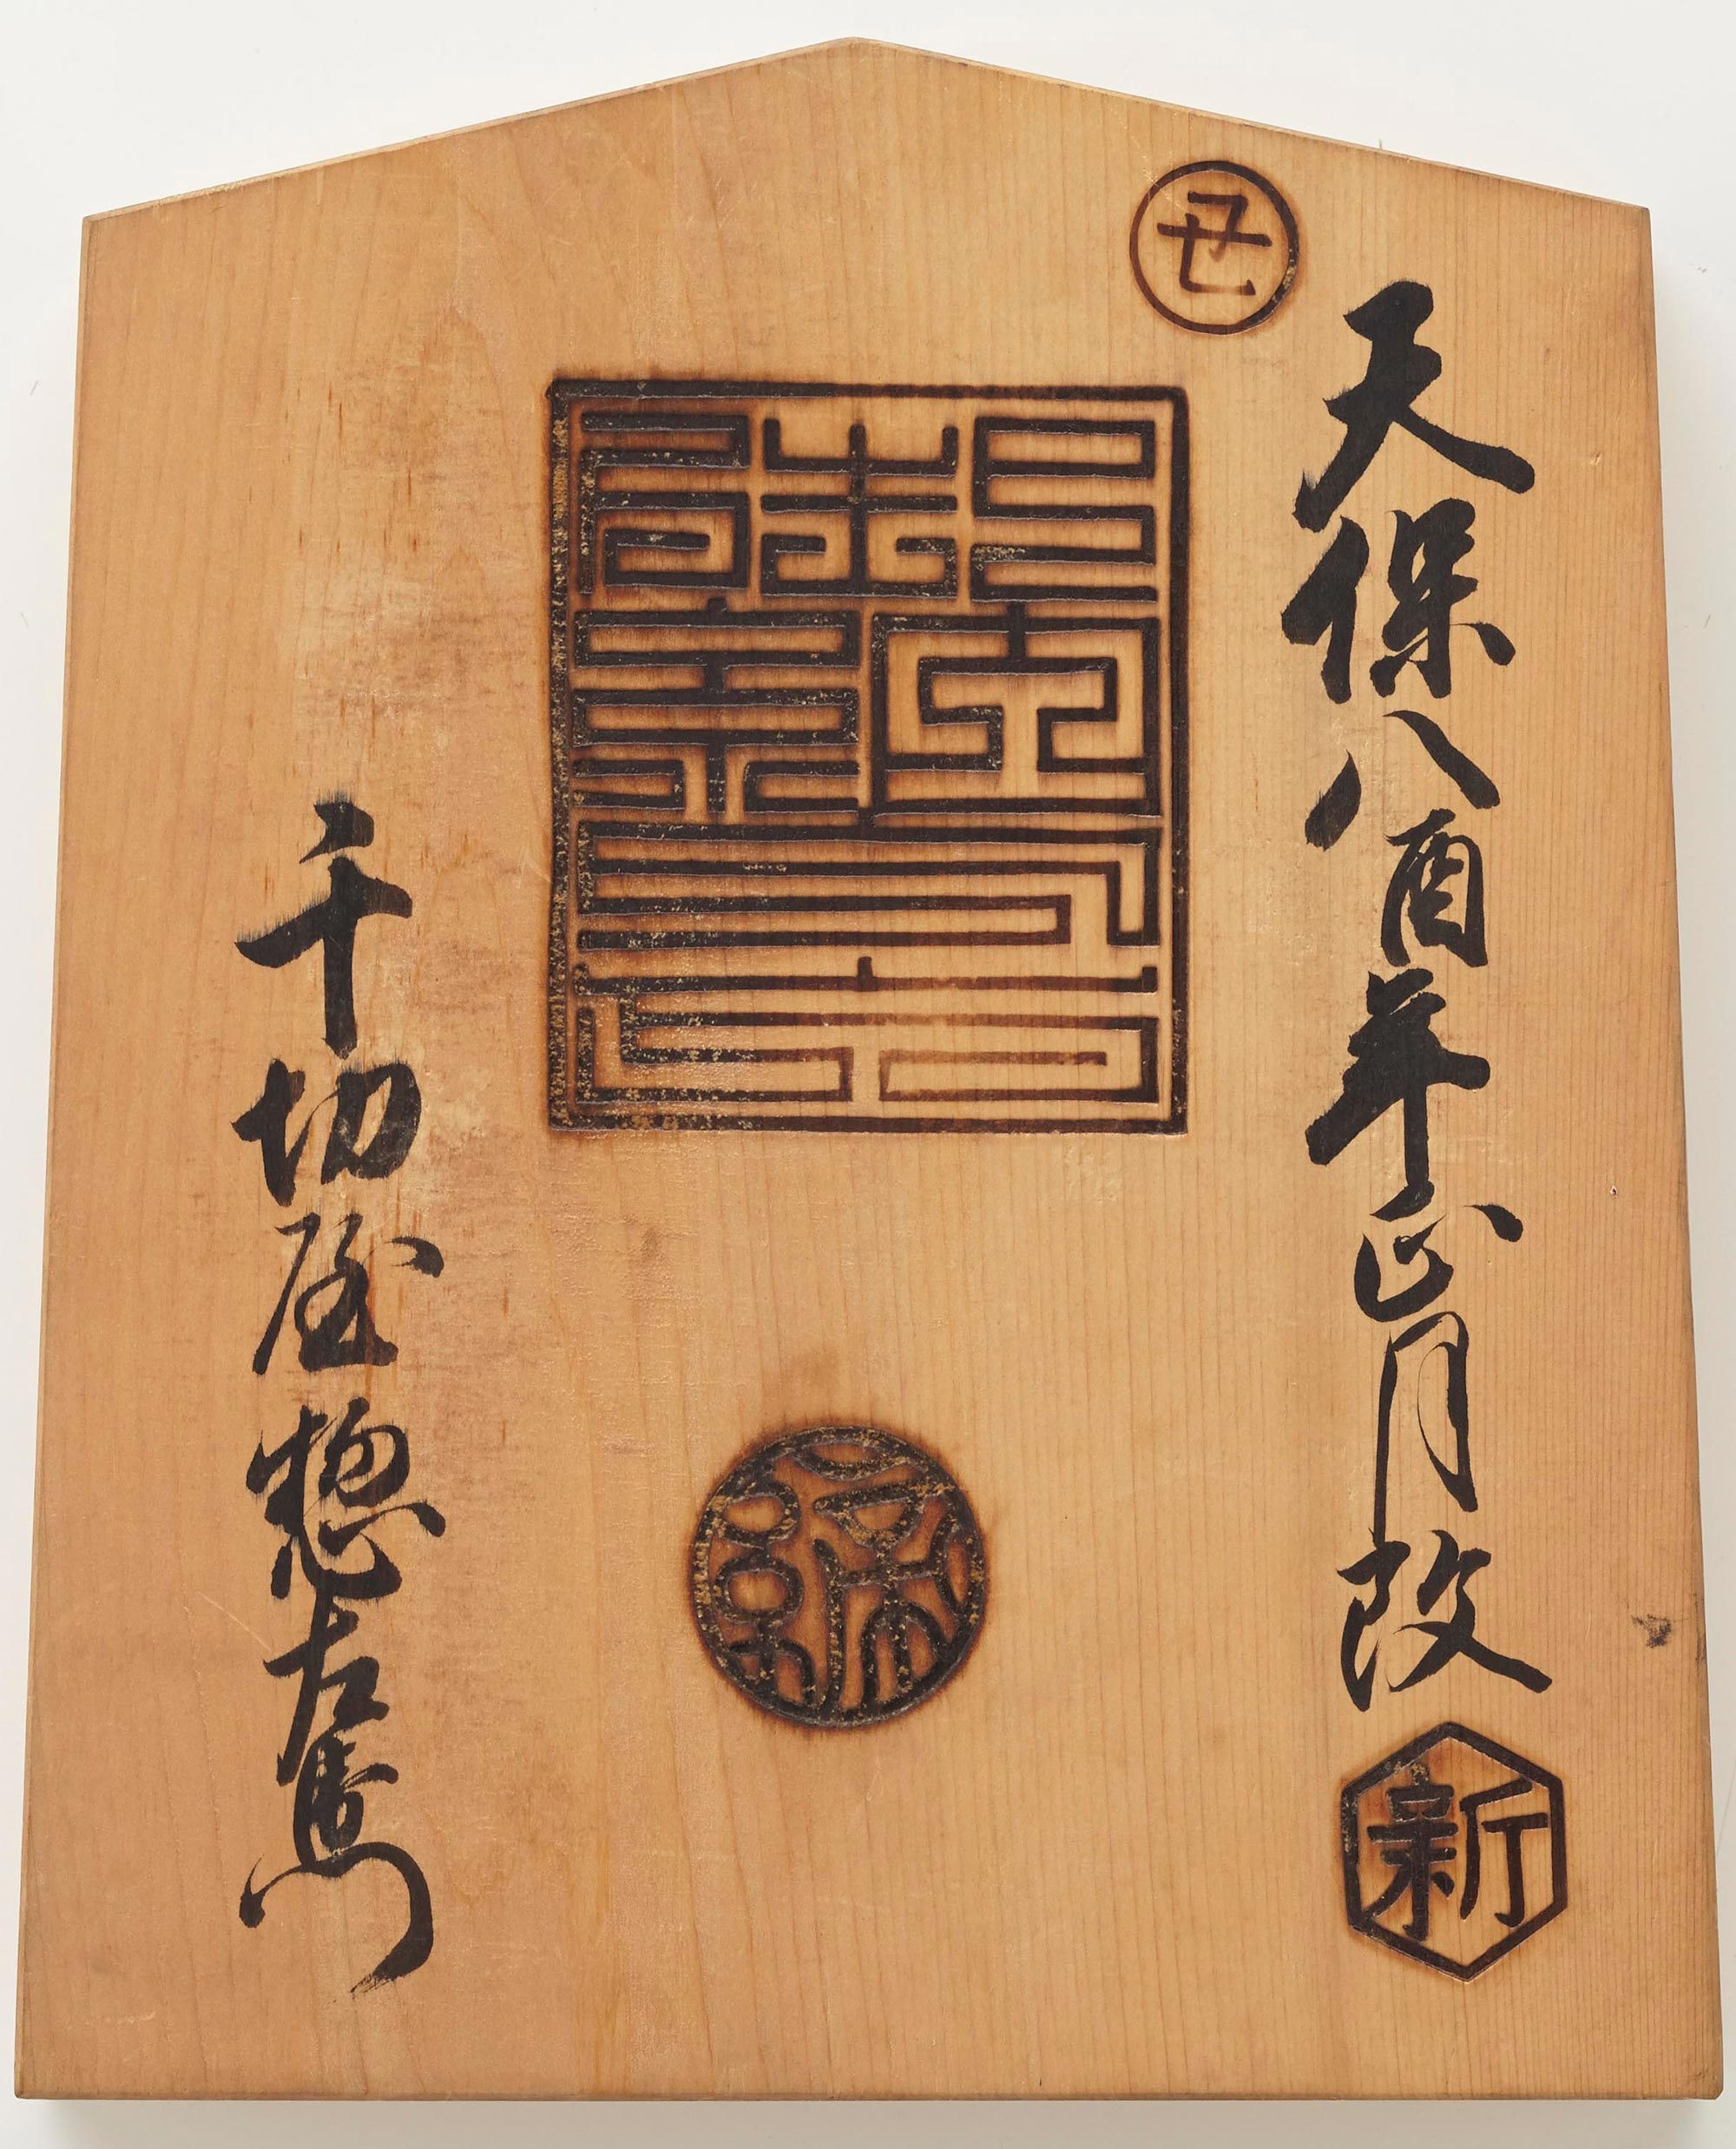 御用商売鑑札 六条御殿 / 天保8(1837)年